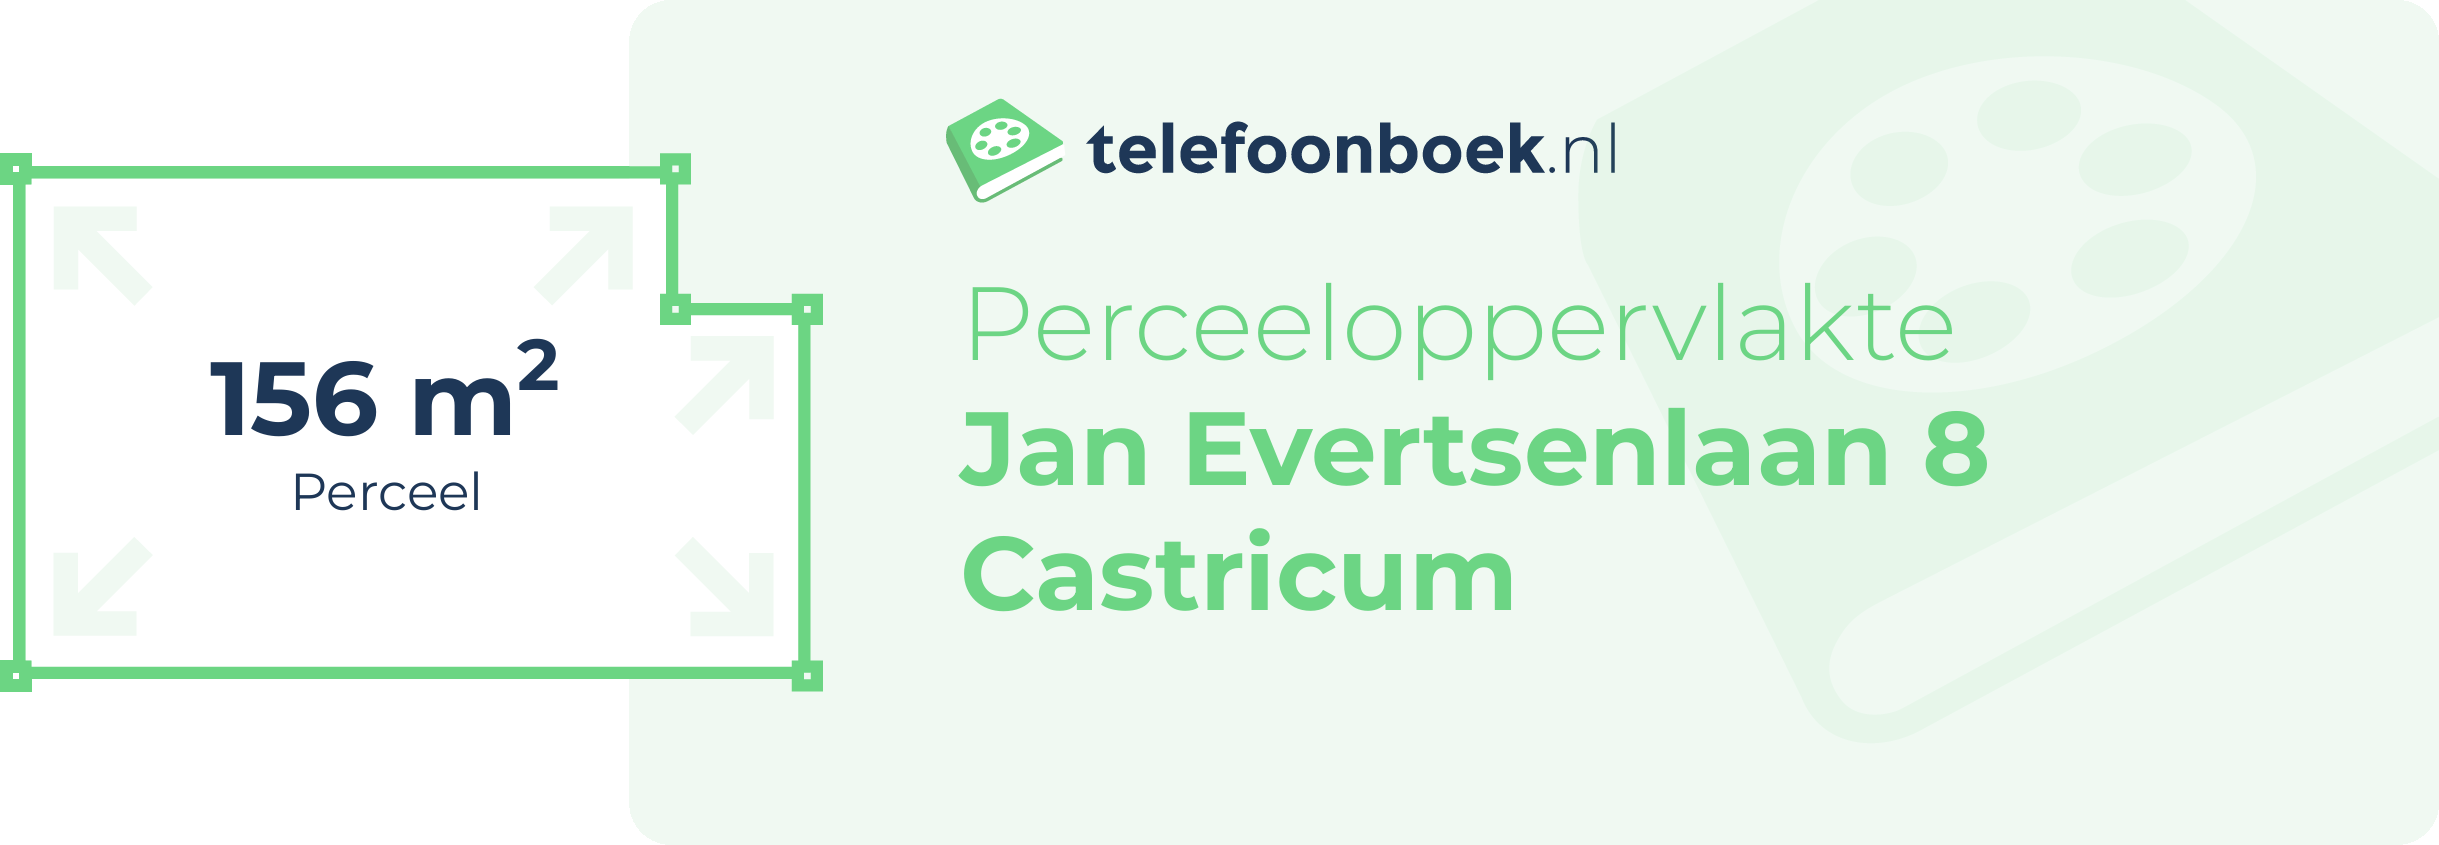 Perceeloppervlakte Jan Evertsenlaan 8 Castricum